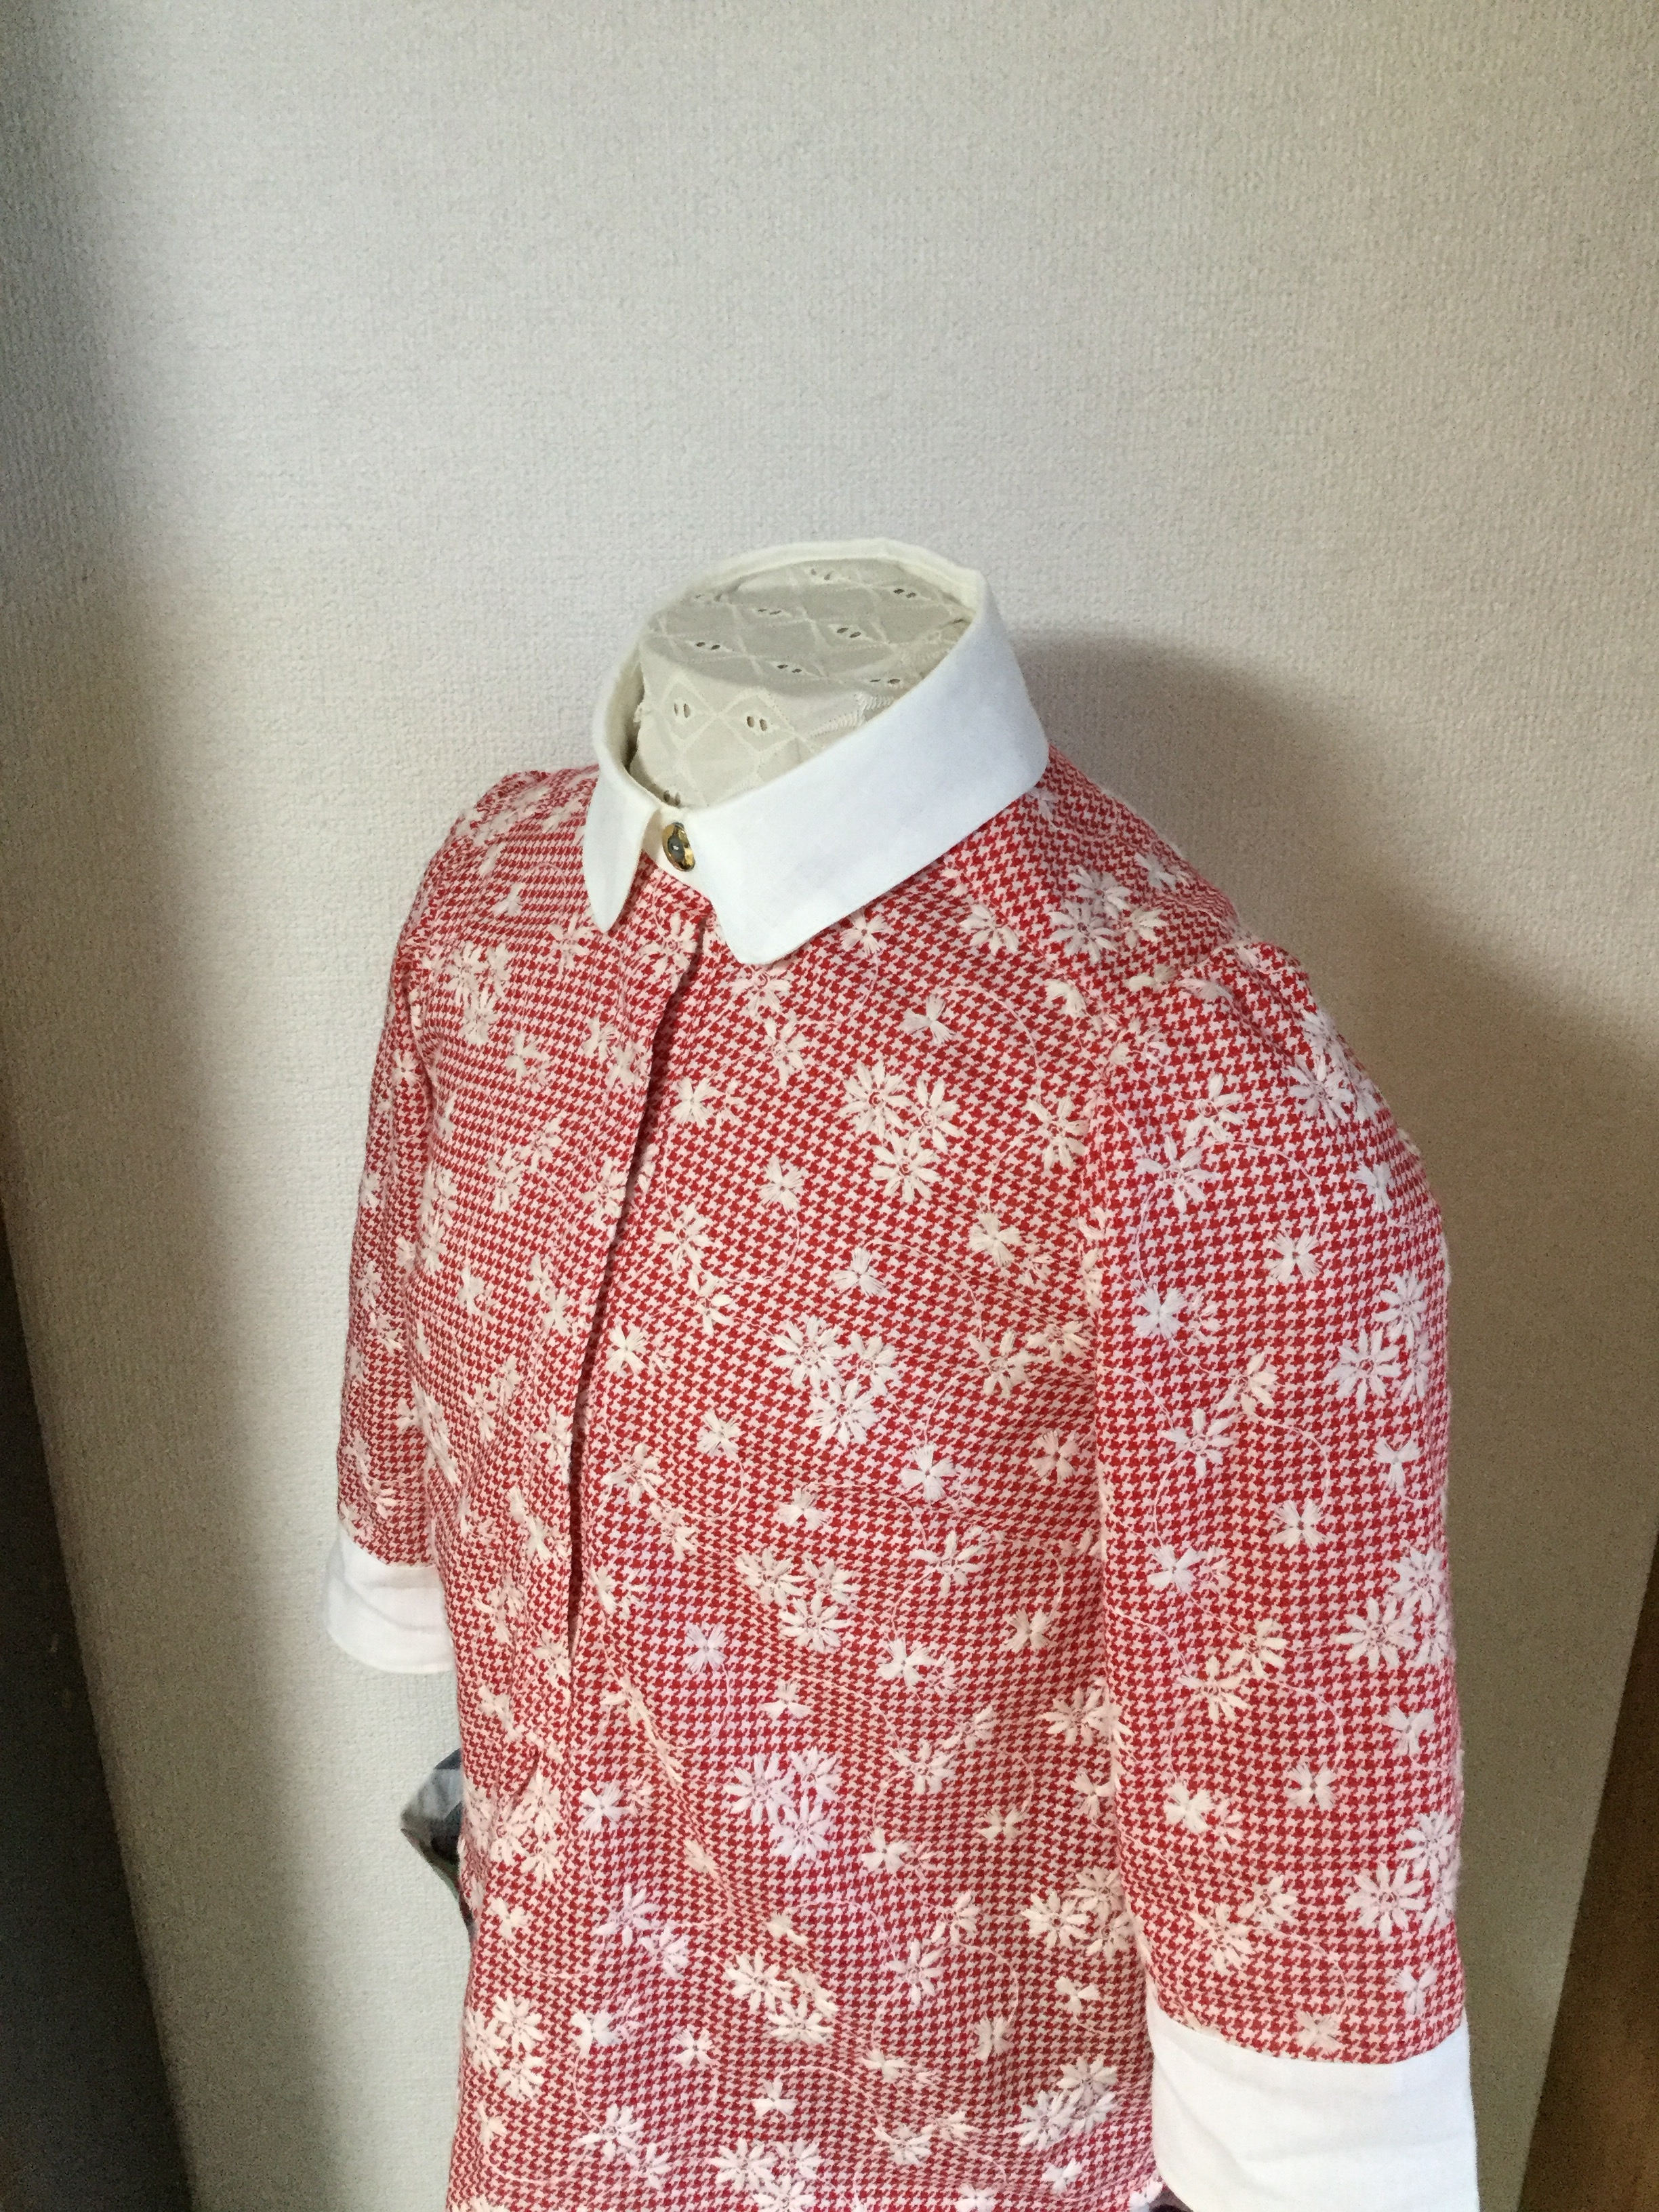 オシャレなレトロシャツ 赤 ビンテージボタン使用 Iichi ハンドメイド クラフト作品 手仕事品の通販